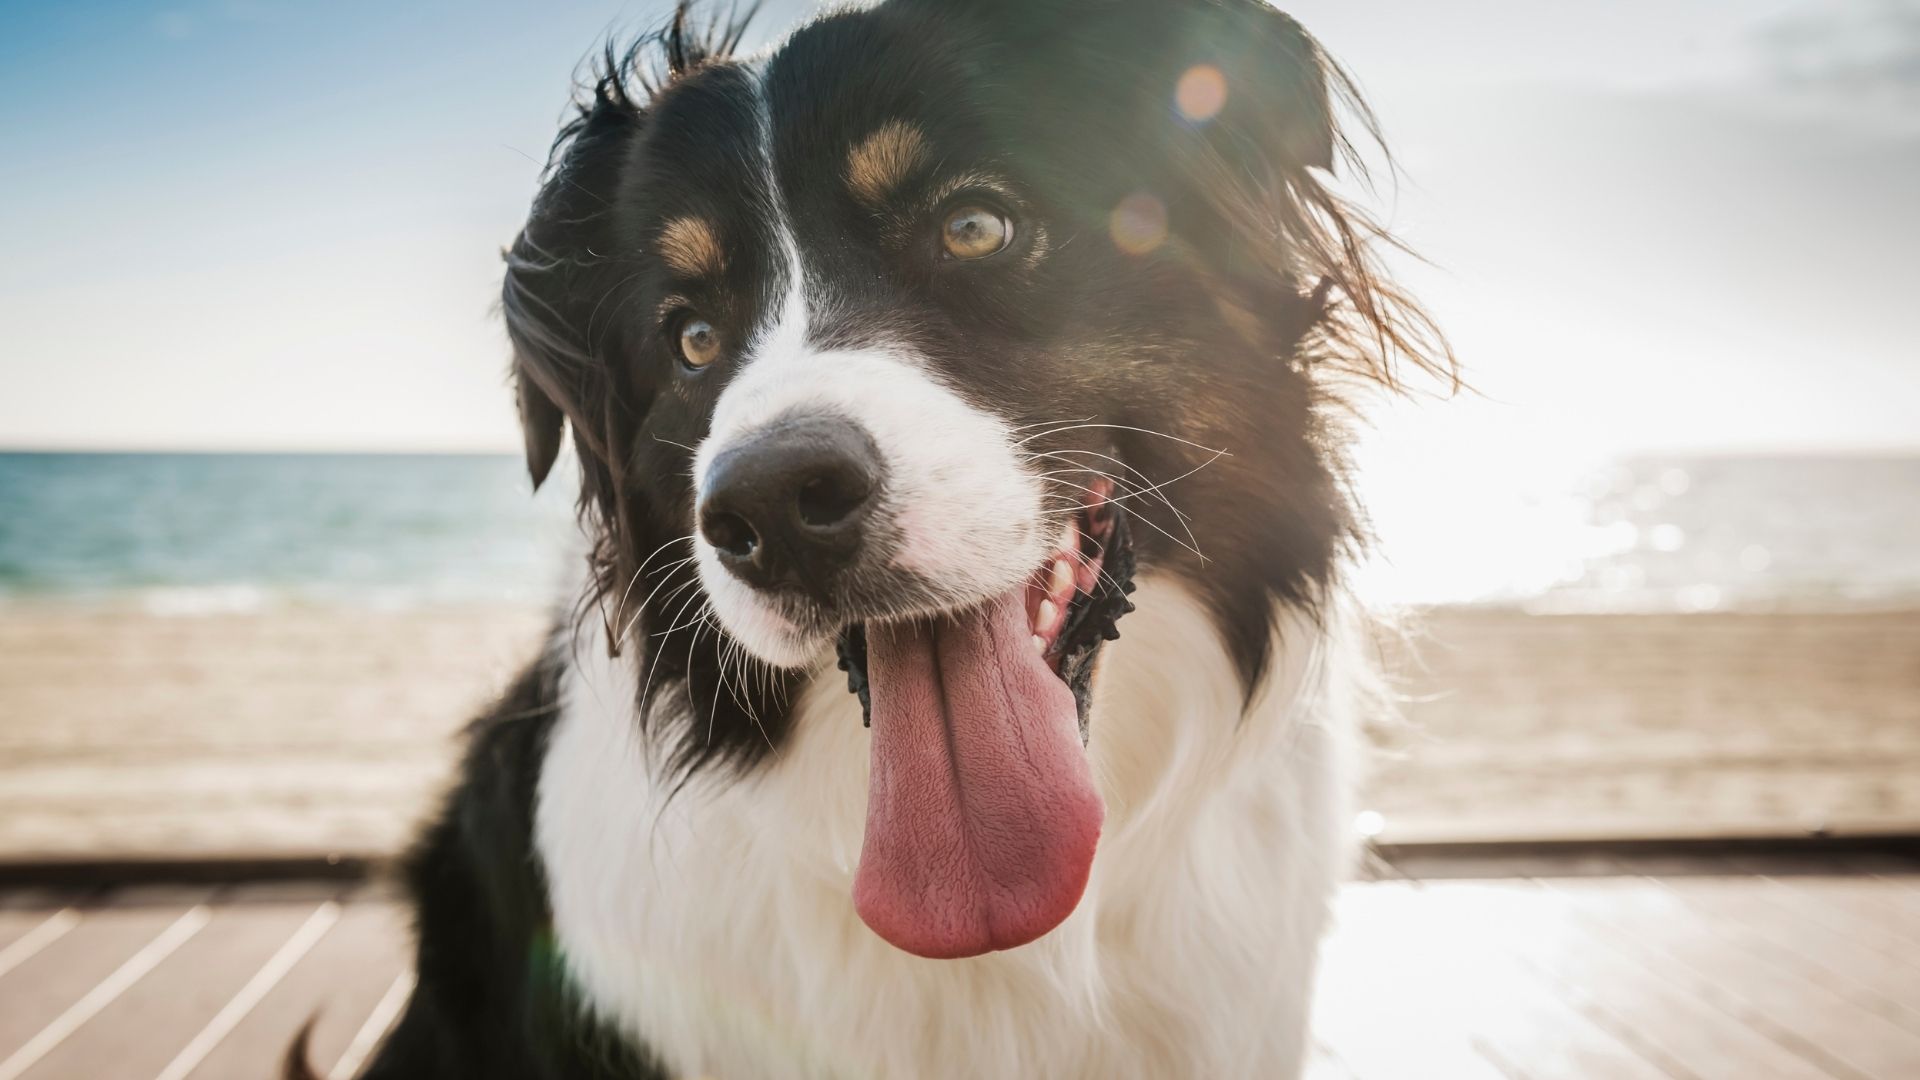 El habla transmite señales acústicas de diagnóstico de identidad que ayudan a humanos y a perros a distinguir a sus conocidos (Getty)